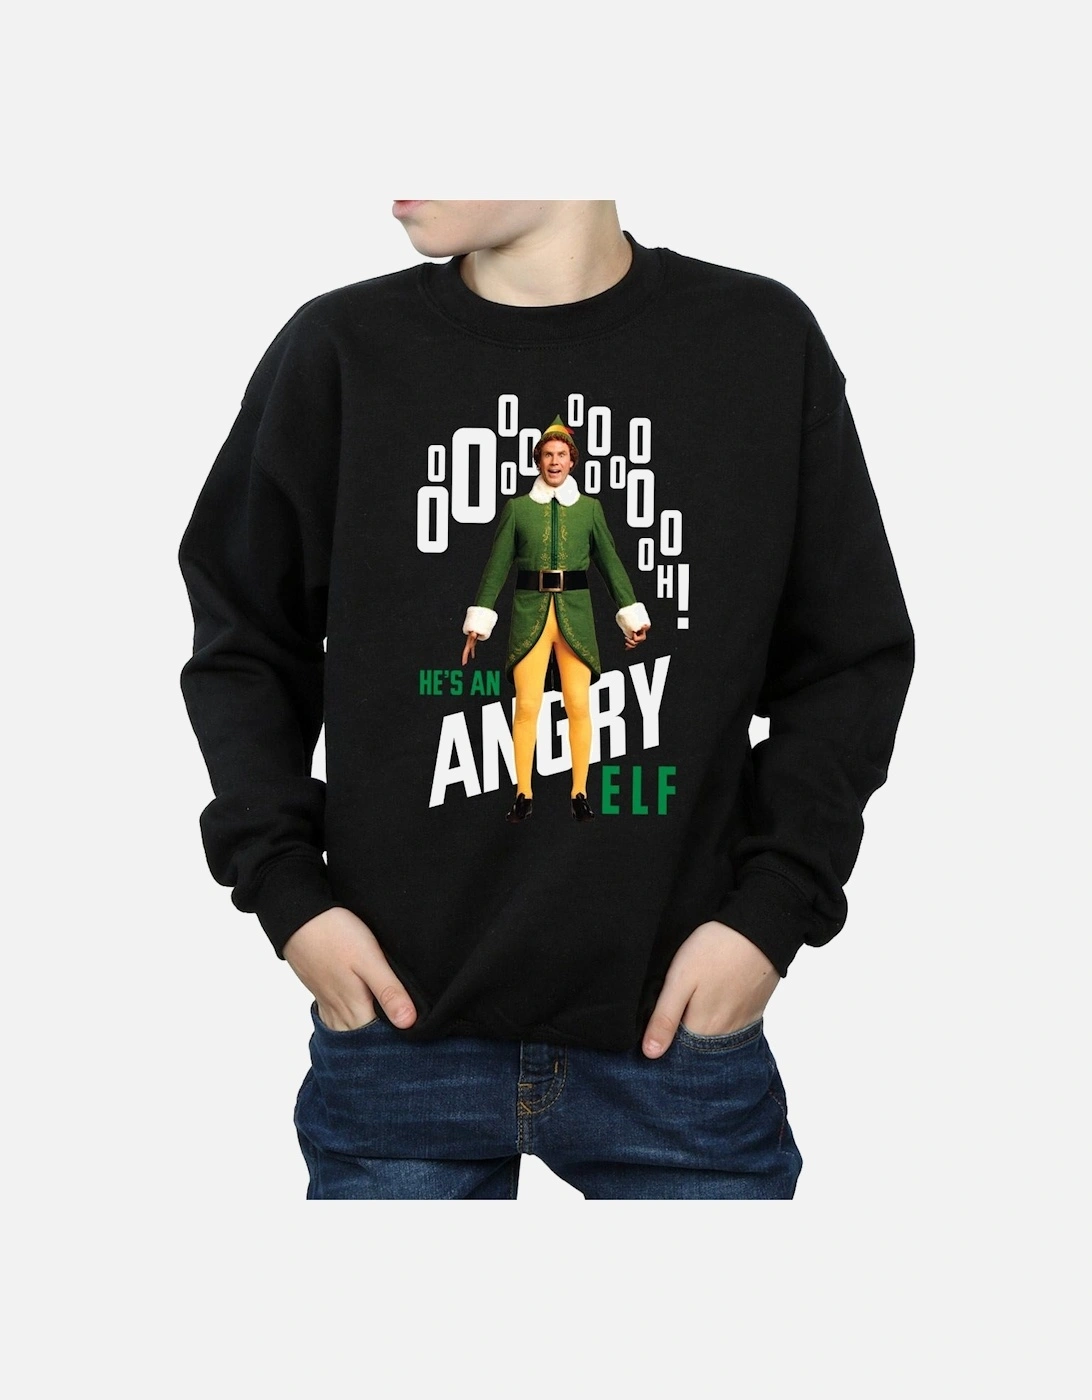 Boys Angry Sweatshirt